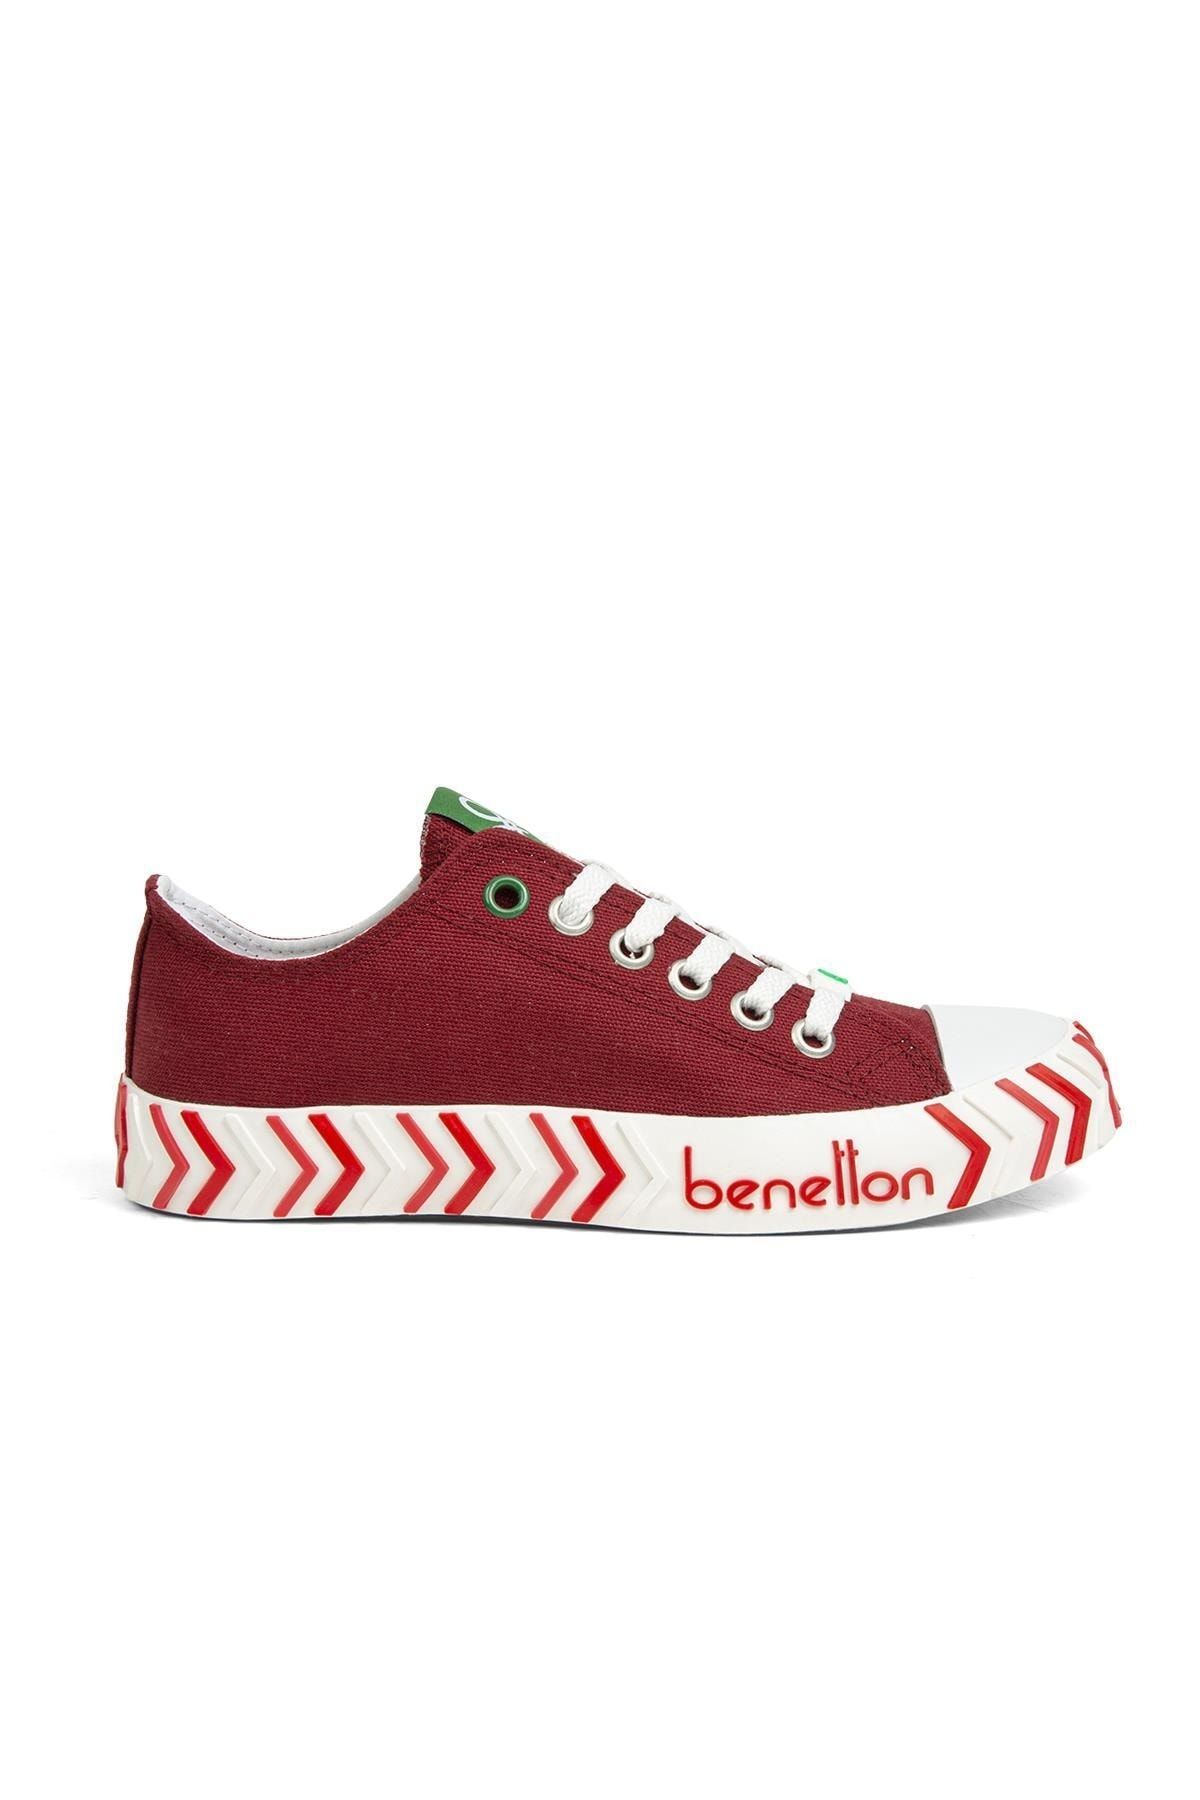 Benetton ® | Bn-30624-3374 Bordo - Kadın Spor Ayakkabı